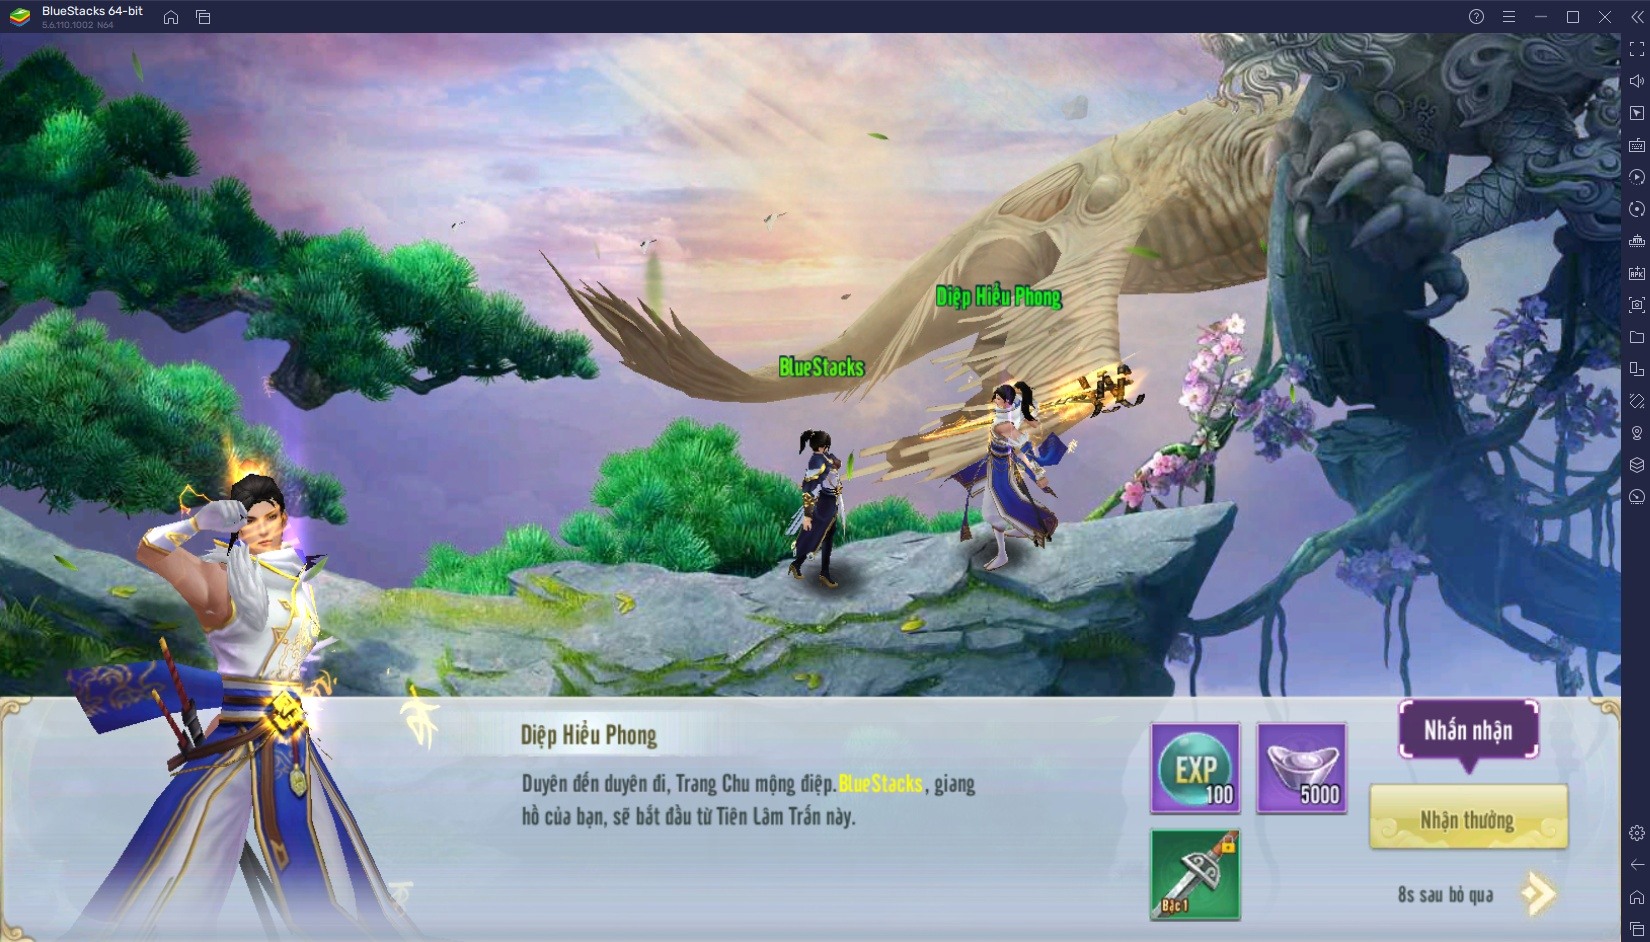 Trải nghiệm game nhập vai Giang Hồ Hiệp Ảnh trên PC với BlueStacks